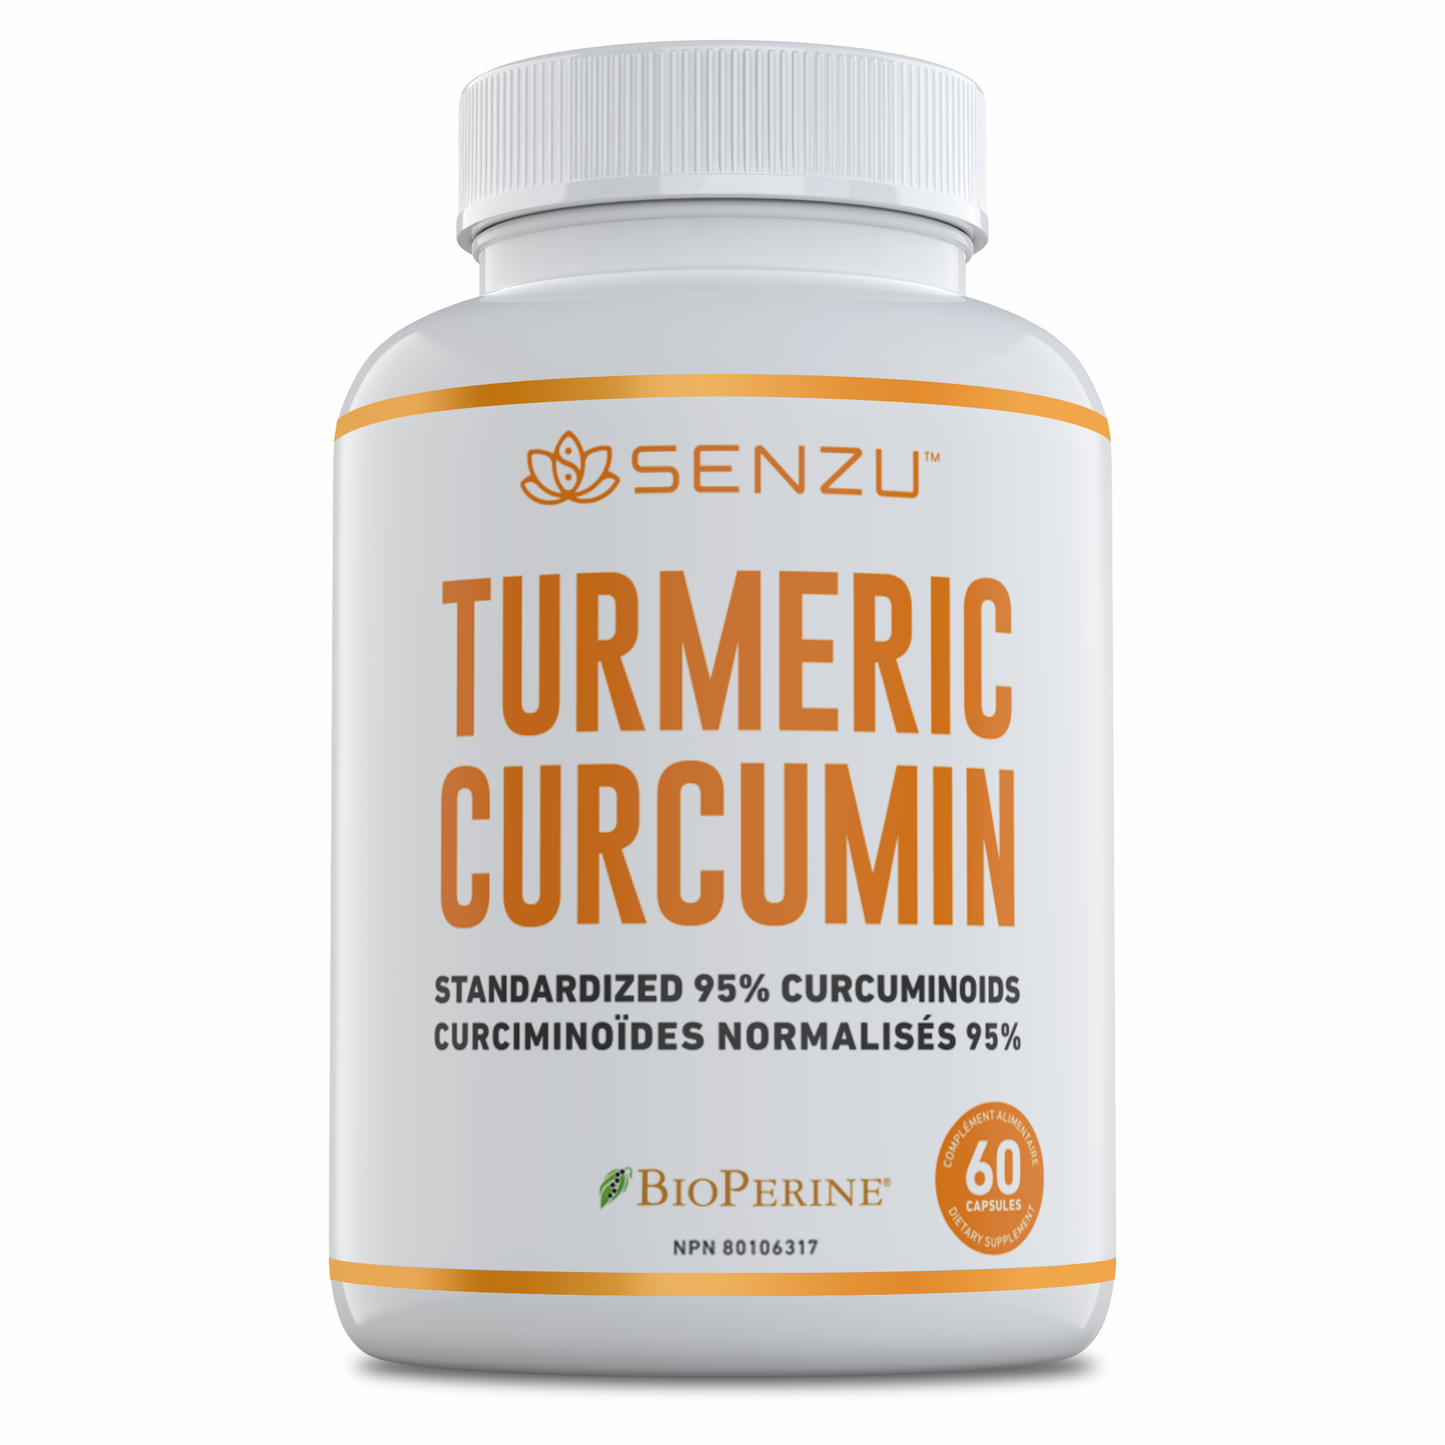 Turmeric Curcumin Pure 95% Extract